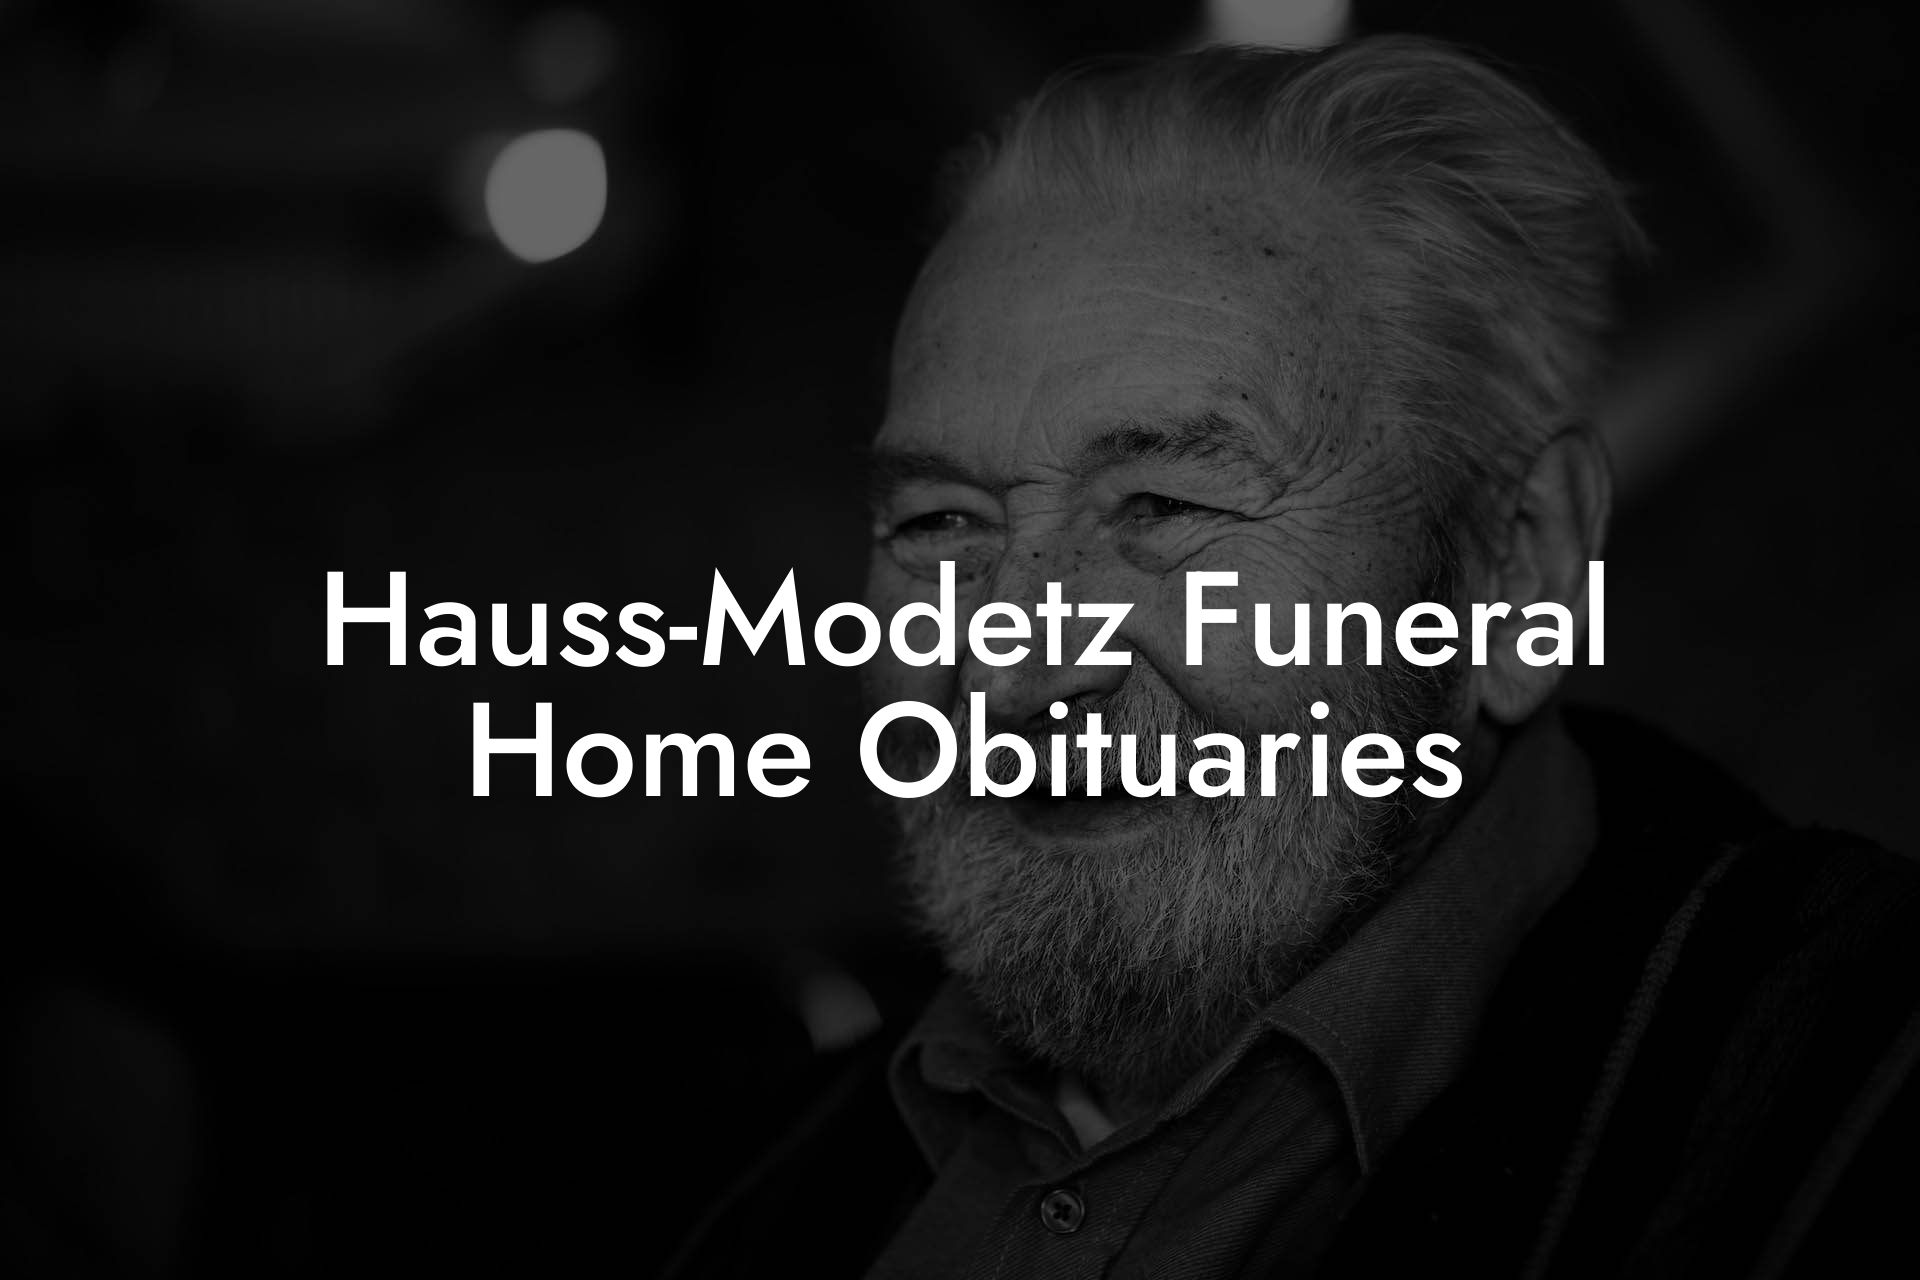 Hauss-Modetz Funeral Home Obituaries